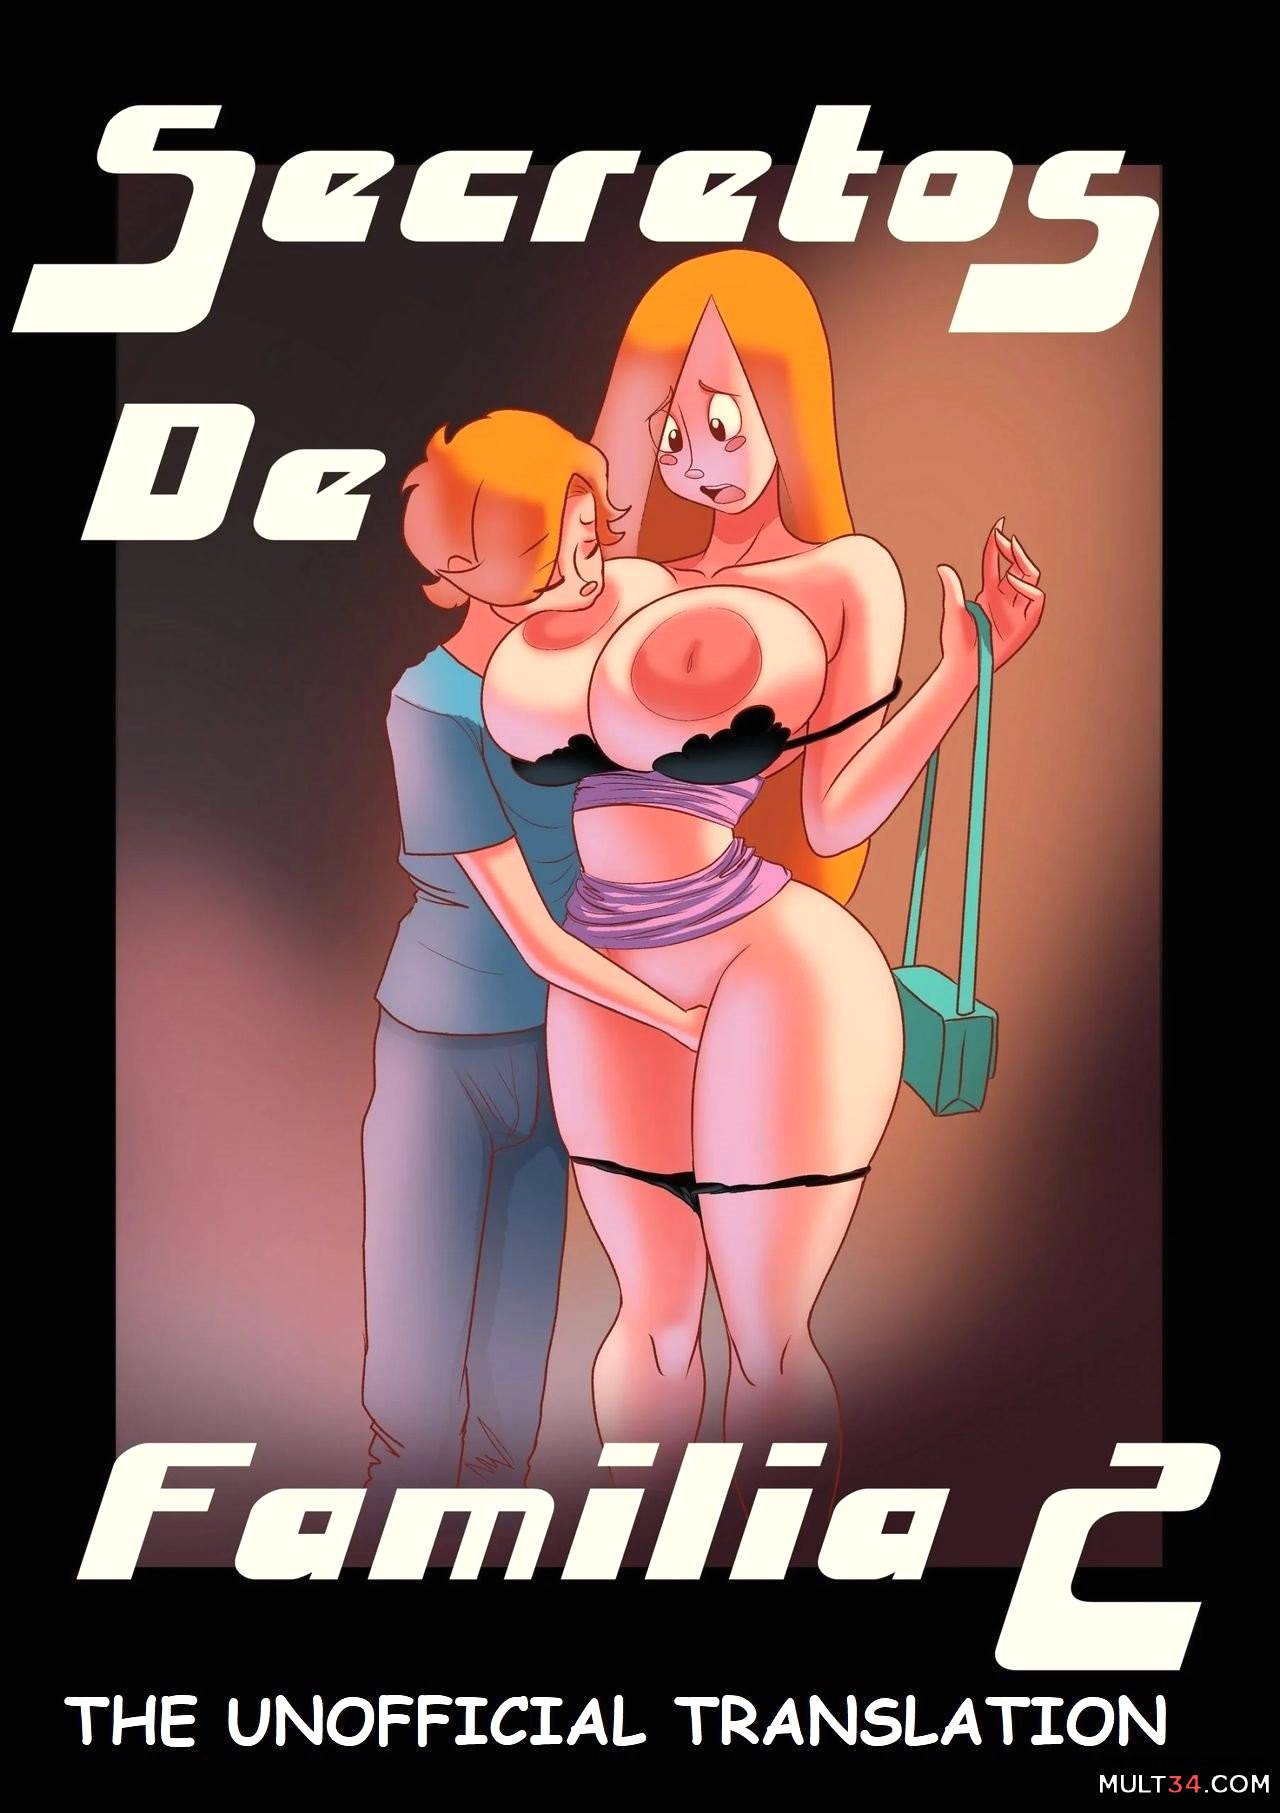 Secretos de Familia #2 porn comic - the best cartoon porn comics, Rule 34 |  MULT34